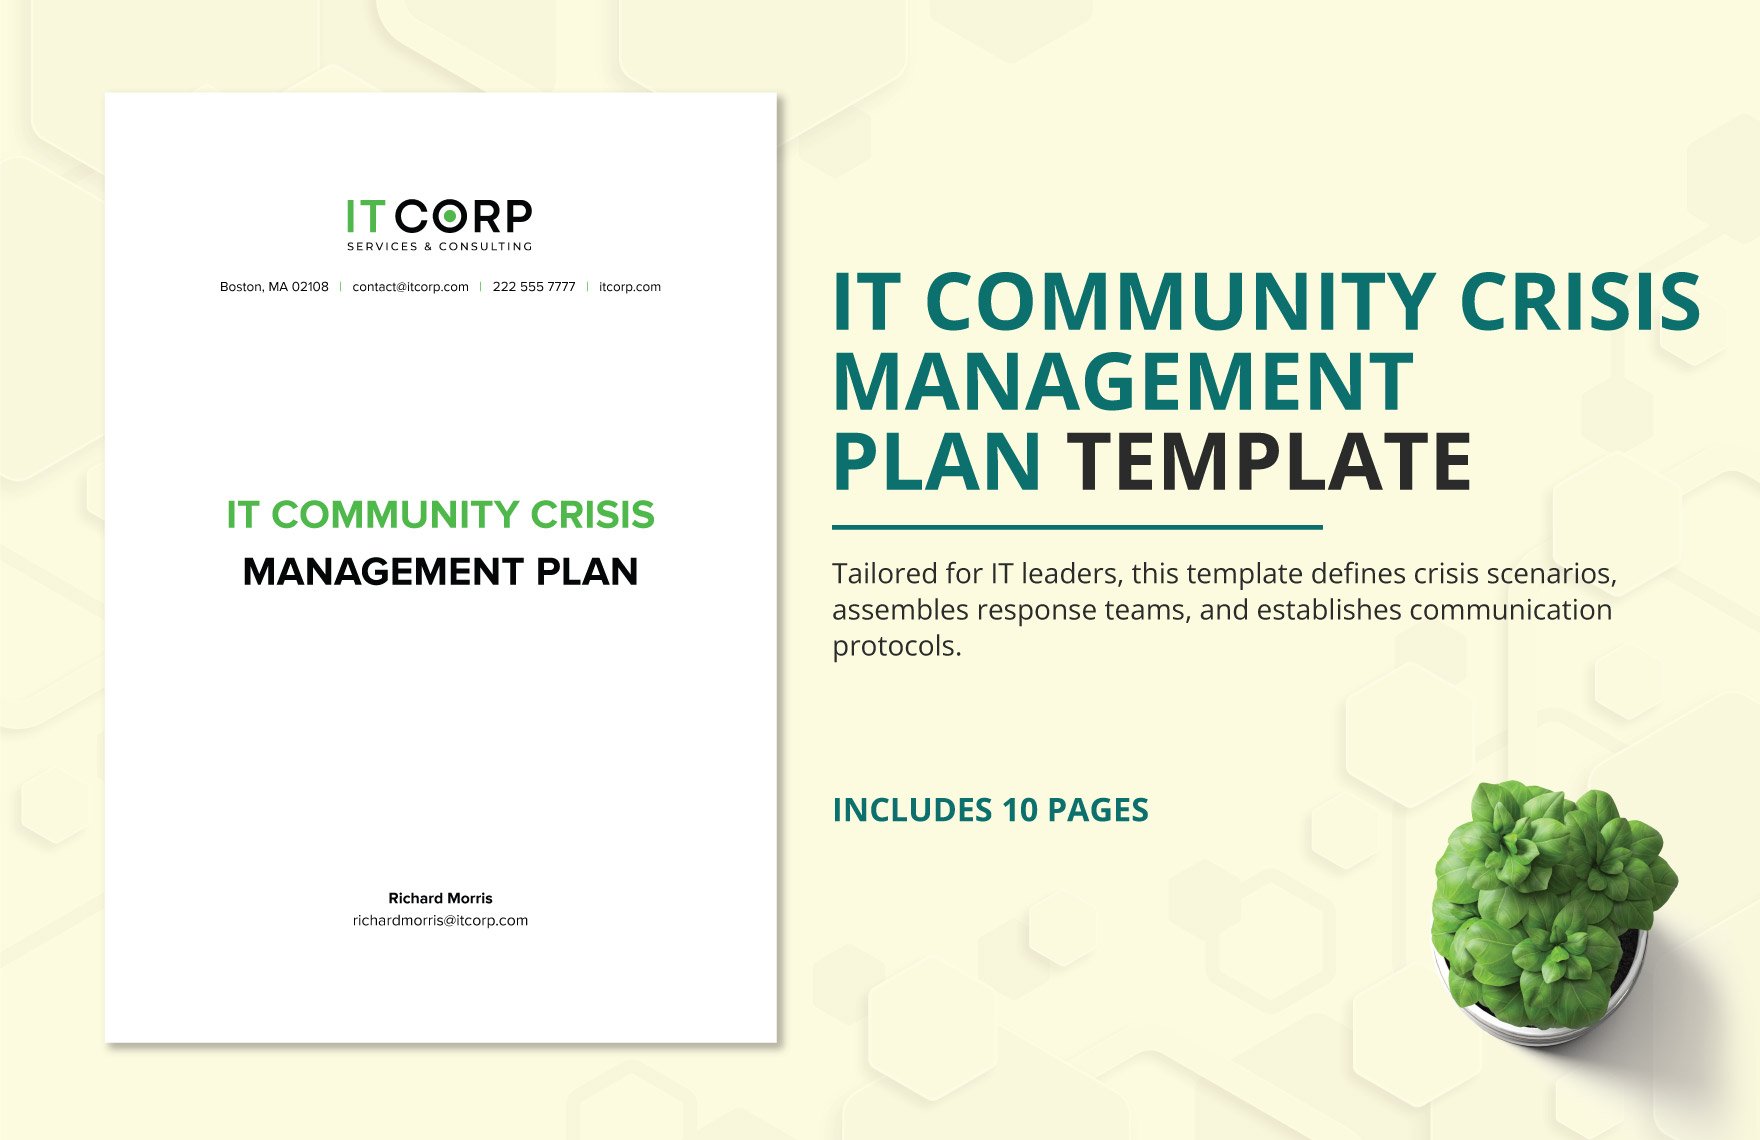 IT Community Crisis Management Plan Template